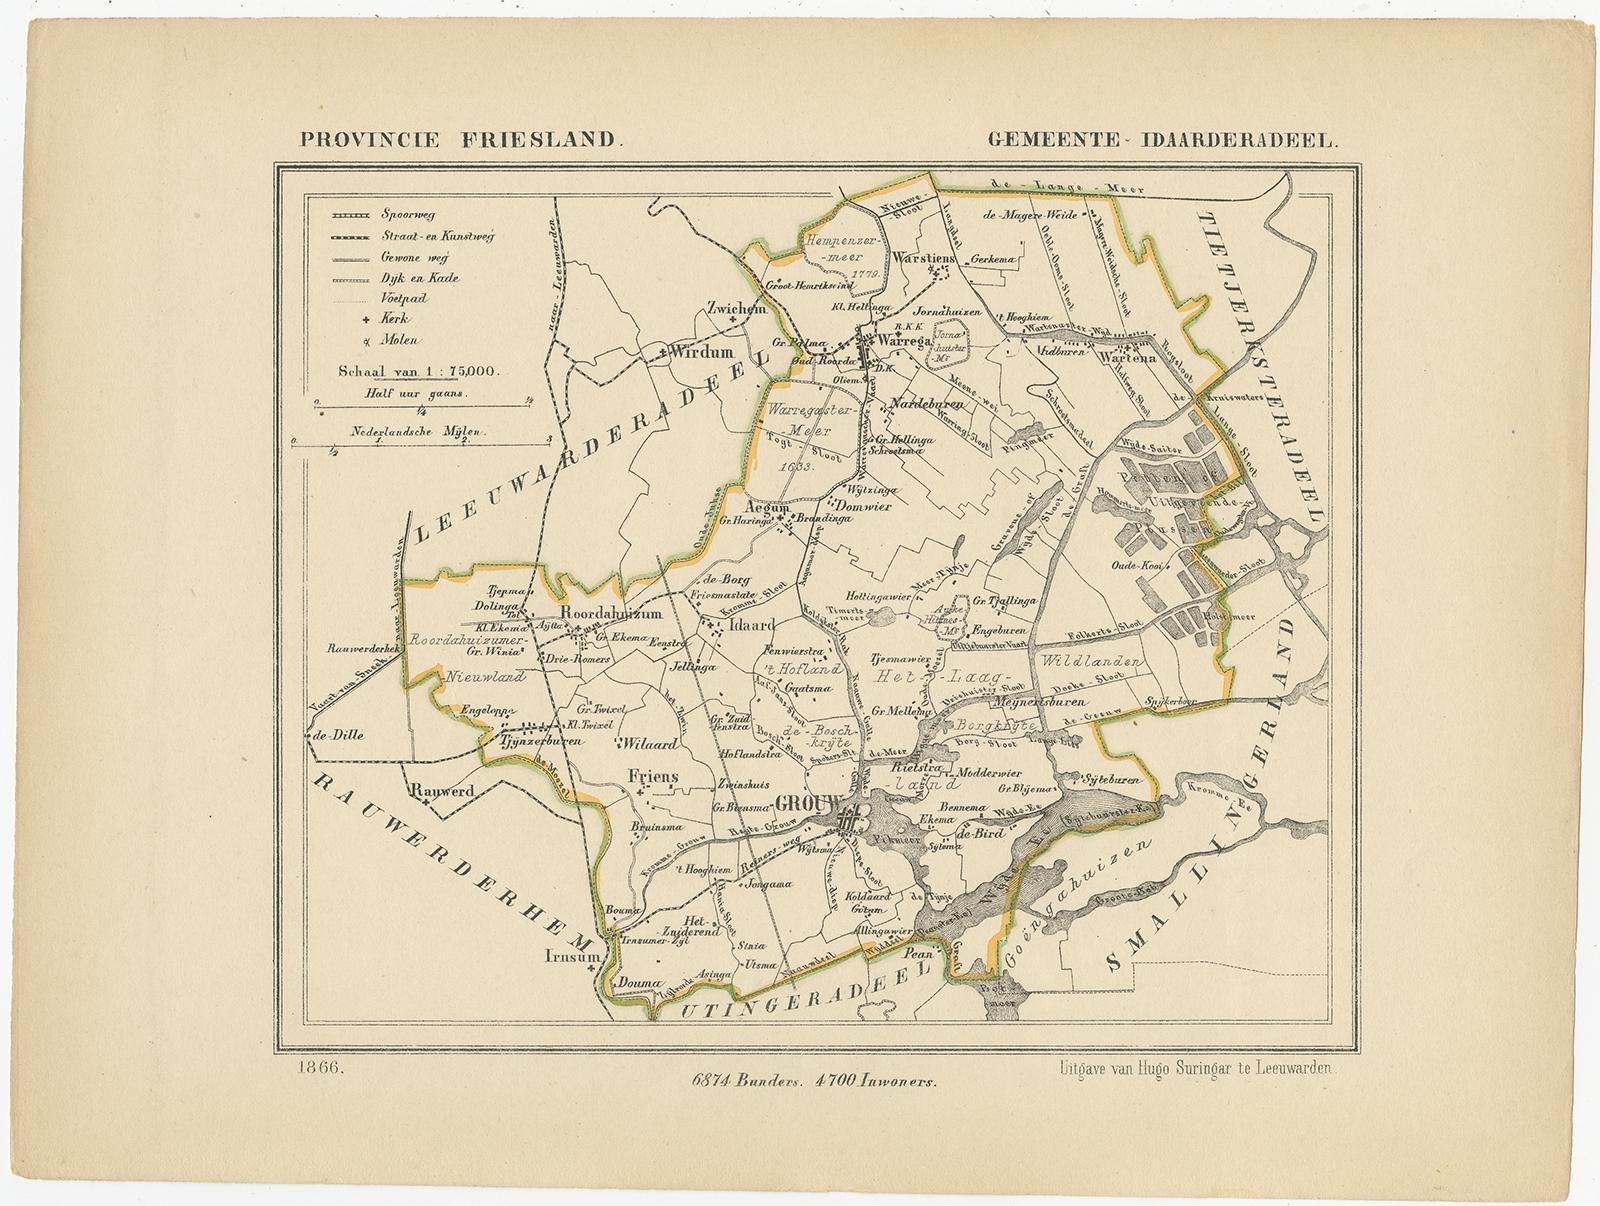 Antique map titled 'Provincie Friesland - Gemeente Idaarderadeel'. 

Map of the township of Idaarderadeel including Wirdum, Grou, Idaard, Warga and many other villages. This map originates from 'Gemeente-Atlas van Nederland' by J. Kuyper.